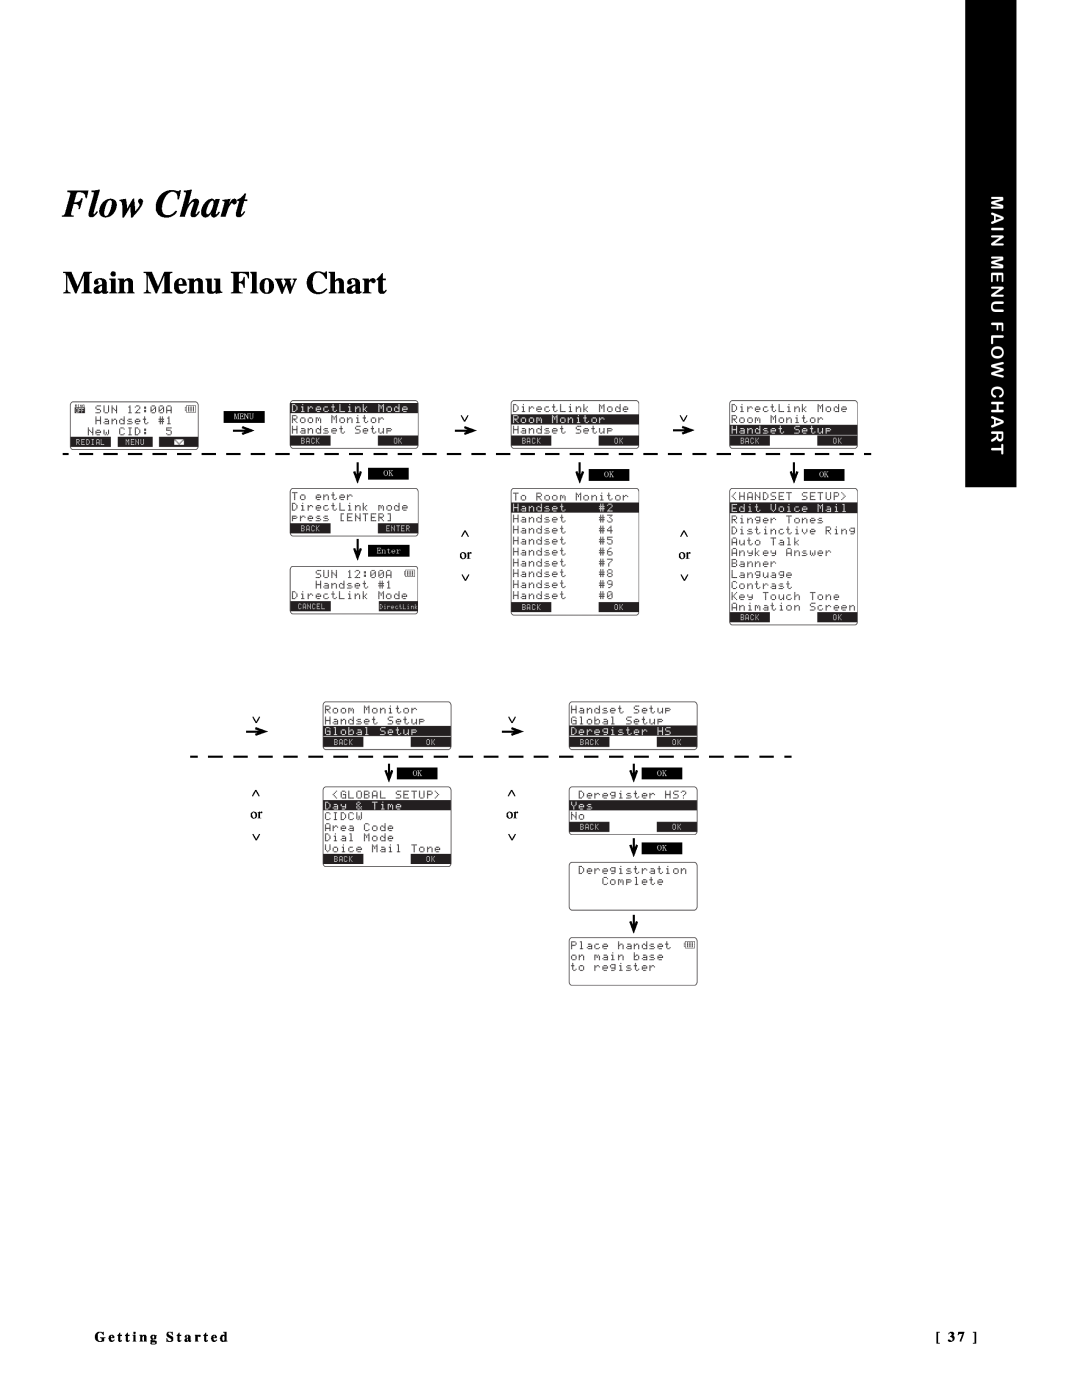 NEC DTR-IR-2 Main Menu Flow Chart, ∨ ∧ or ∨, G e t t i n g S t a r t e d, KTGEV.KPM/QFG 4QQO  /QPKVQT *CPFUGV5GVWR 